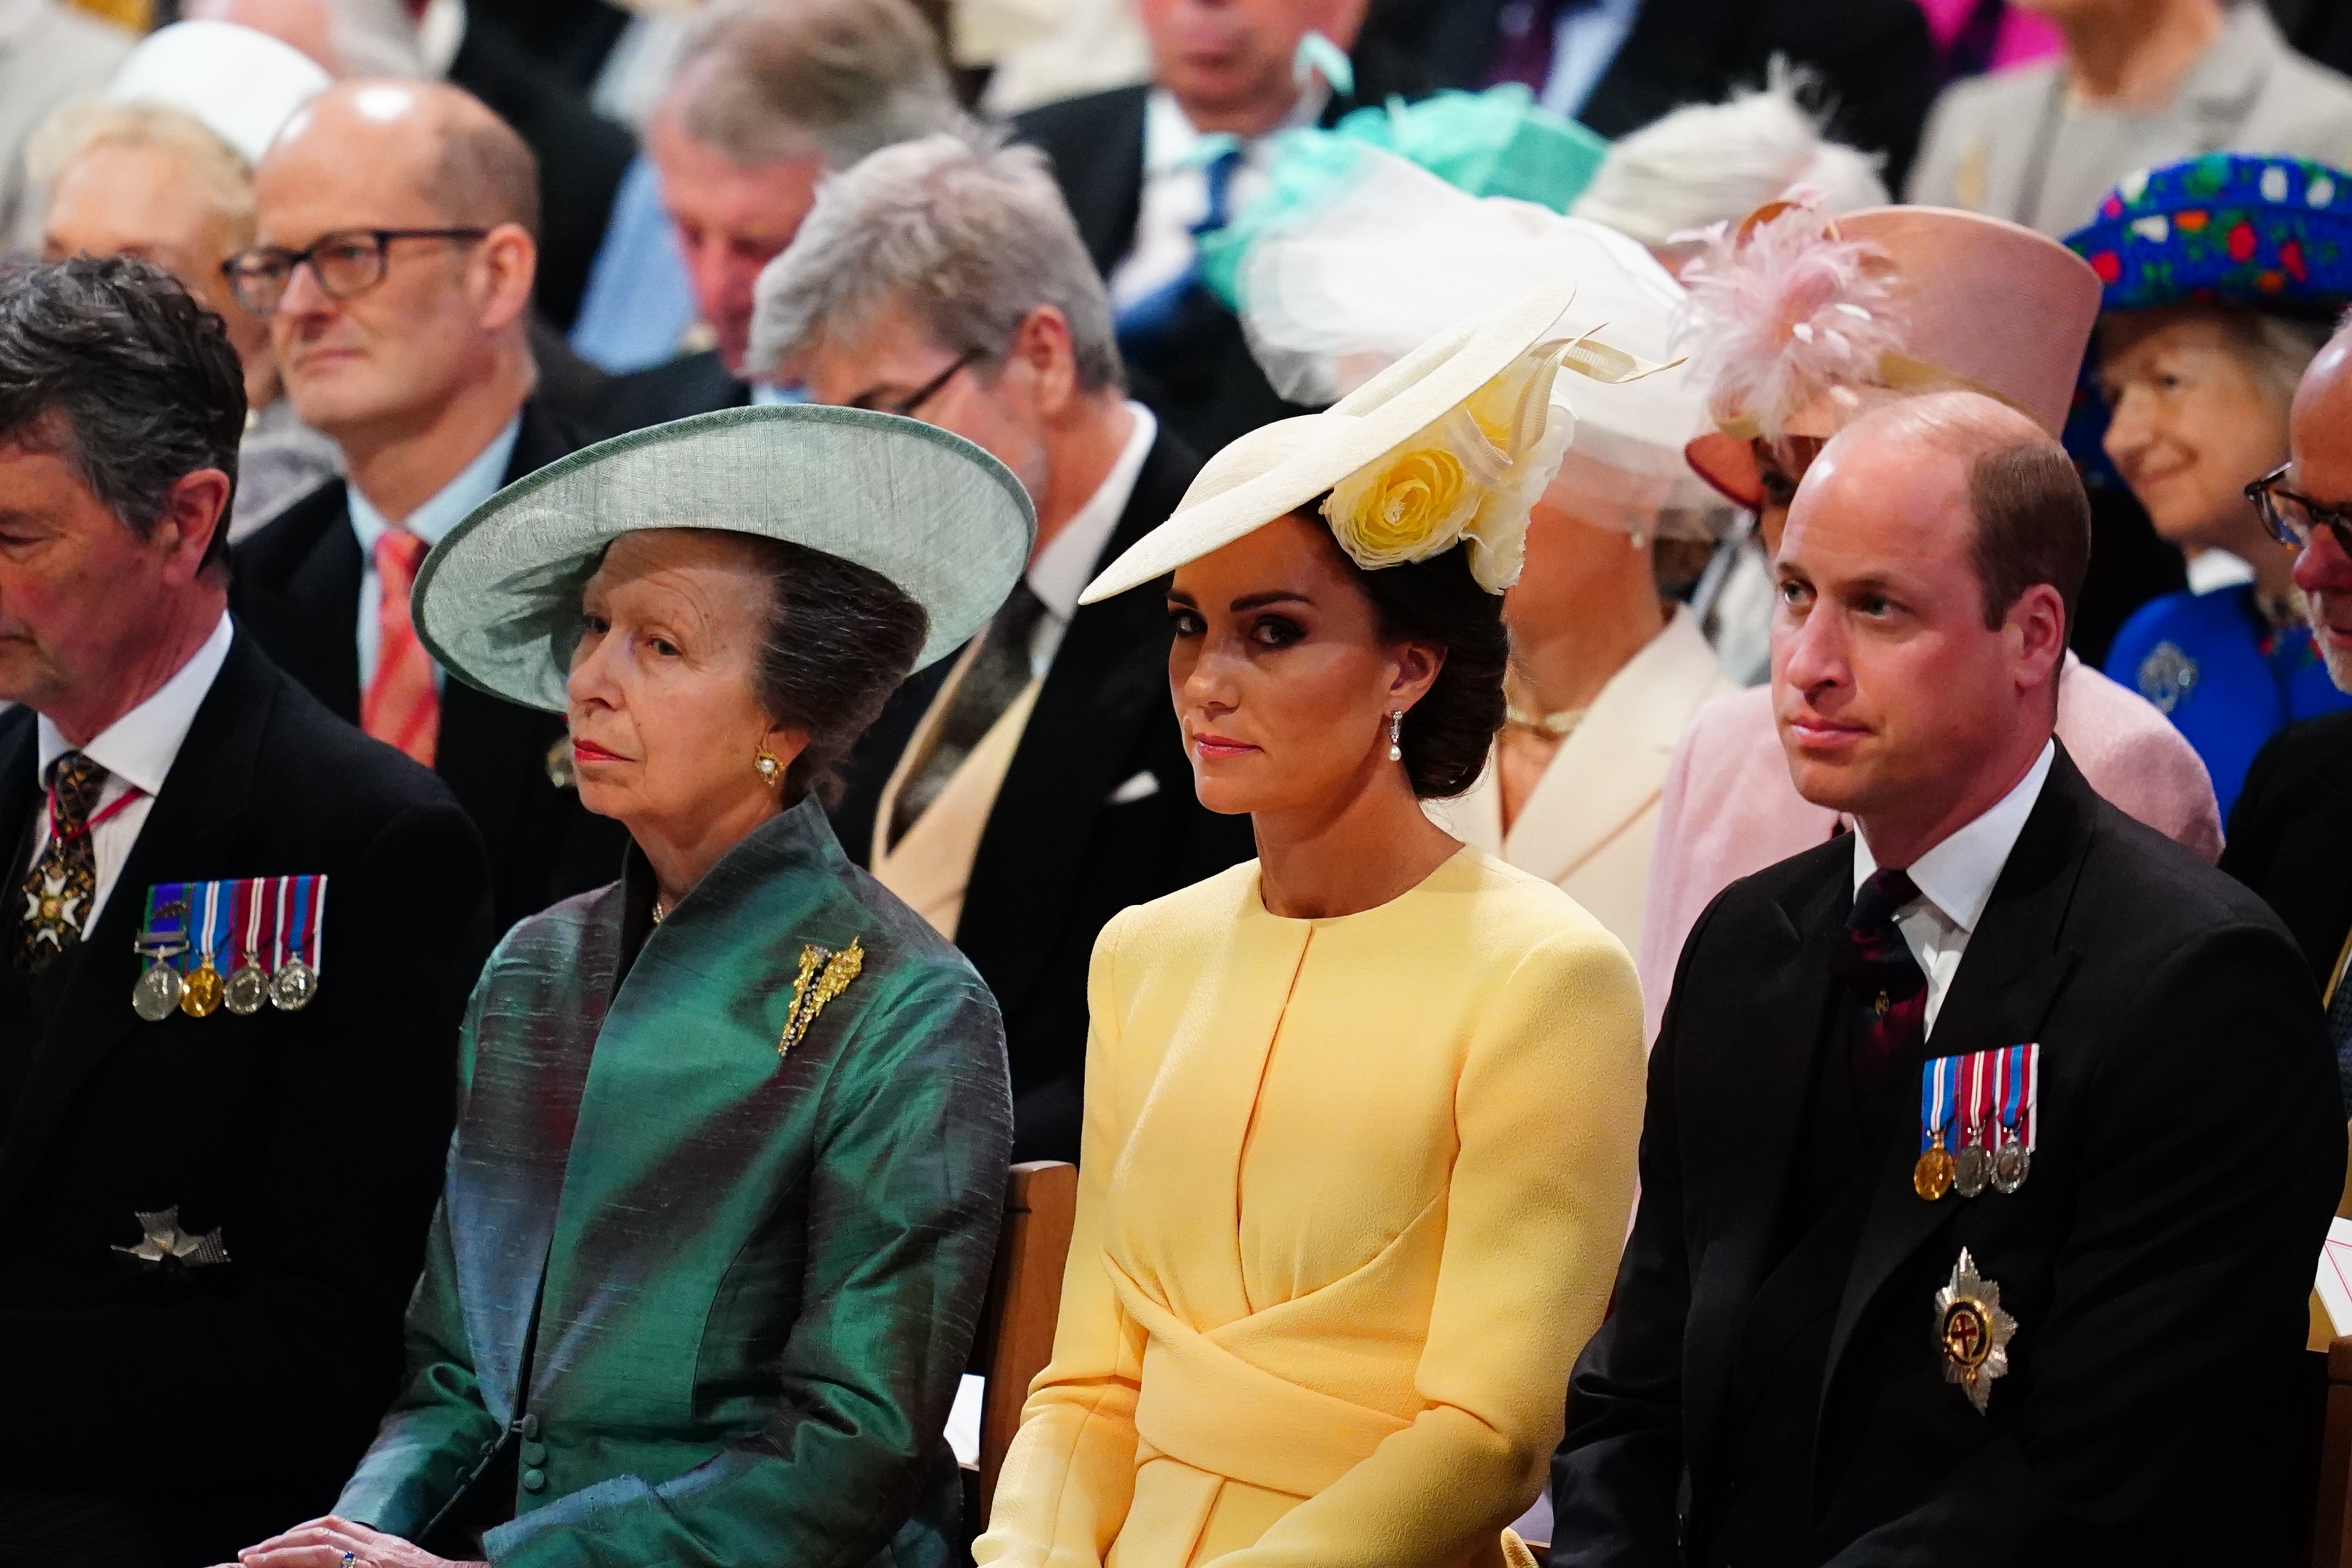 A princesa Anne, a duquesa Kate Middleton e o príncipe William na missa especial na Catedral St. Paul durante as celebrações do Jubileu de Platina da rainha Elizabeth II (Foto: Getty Images)